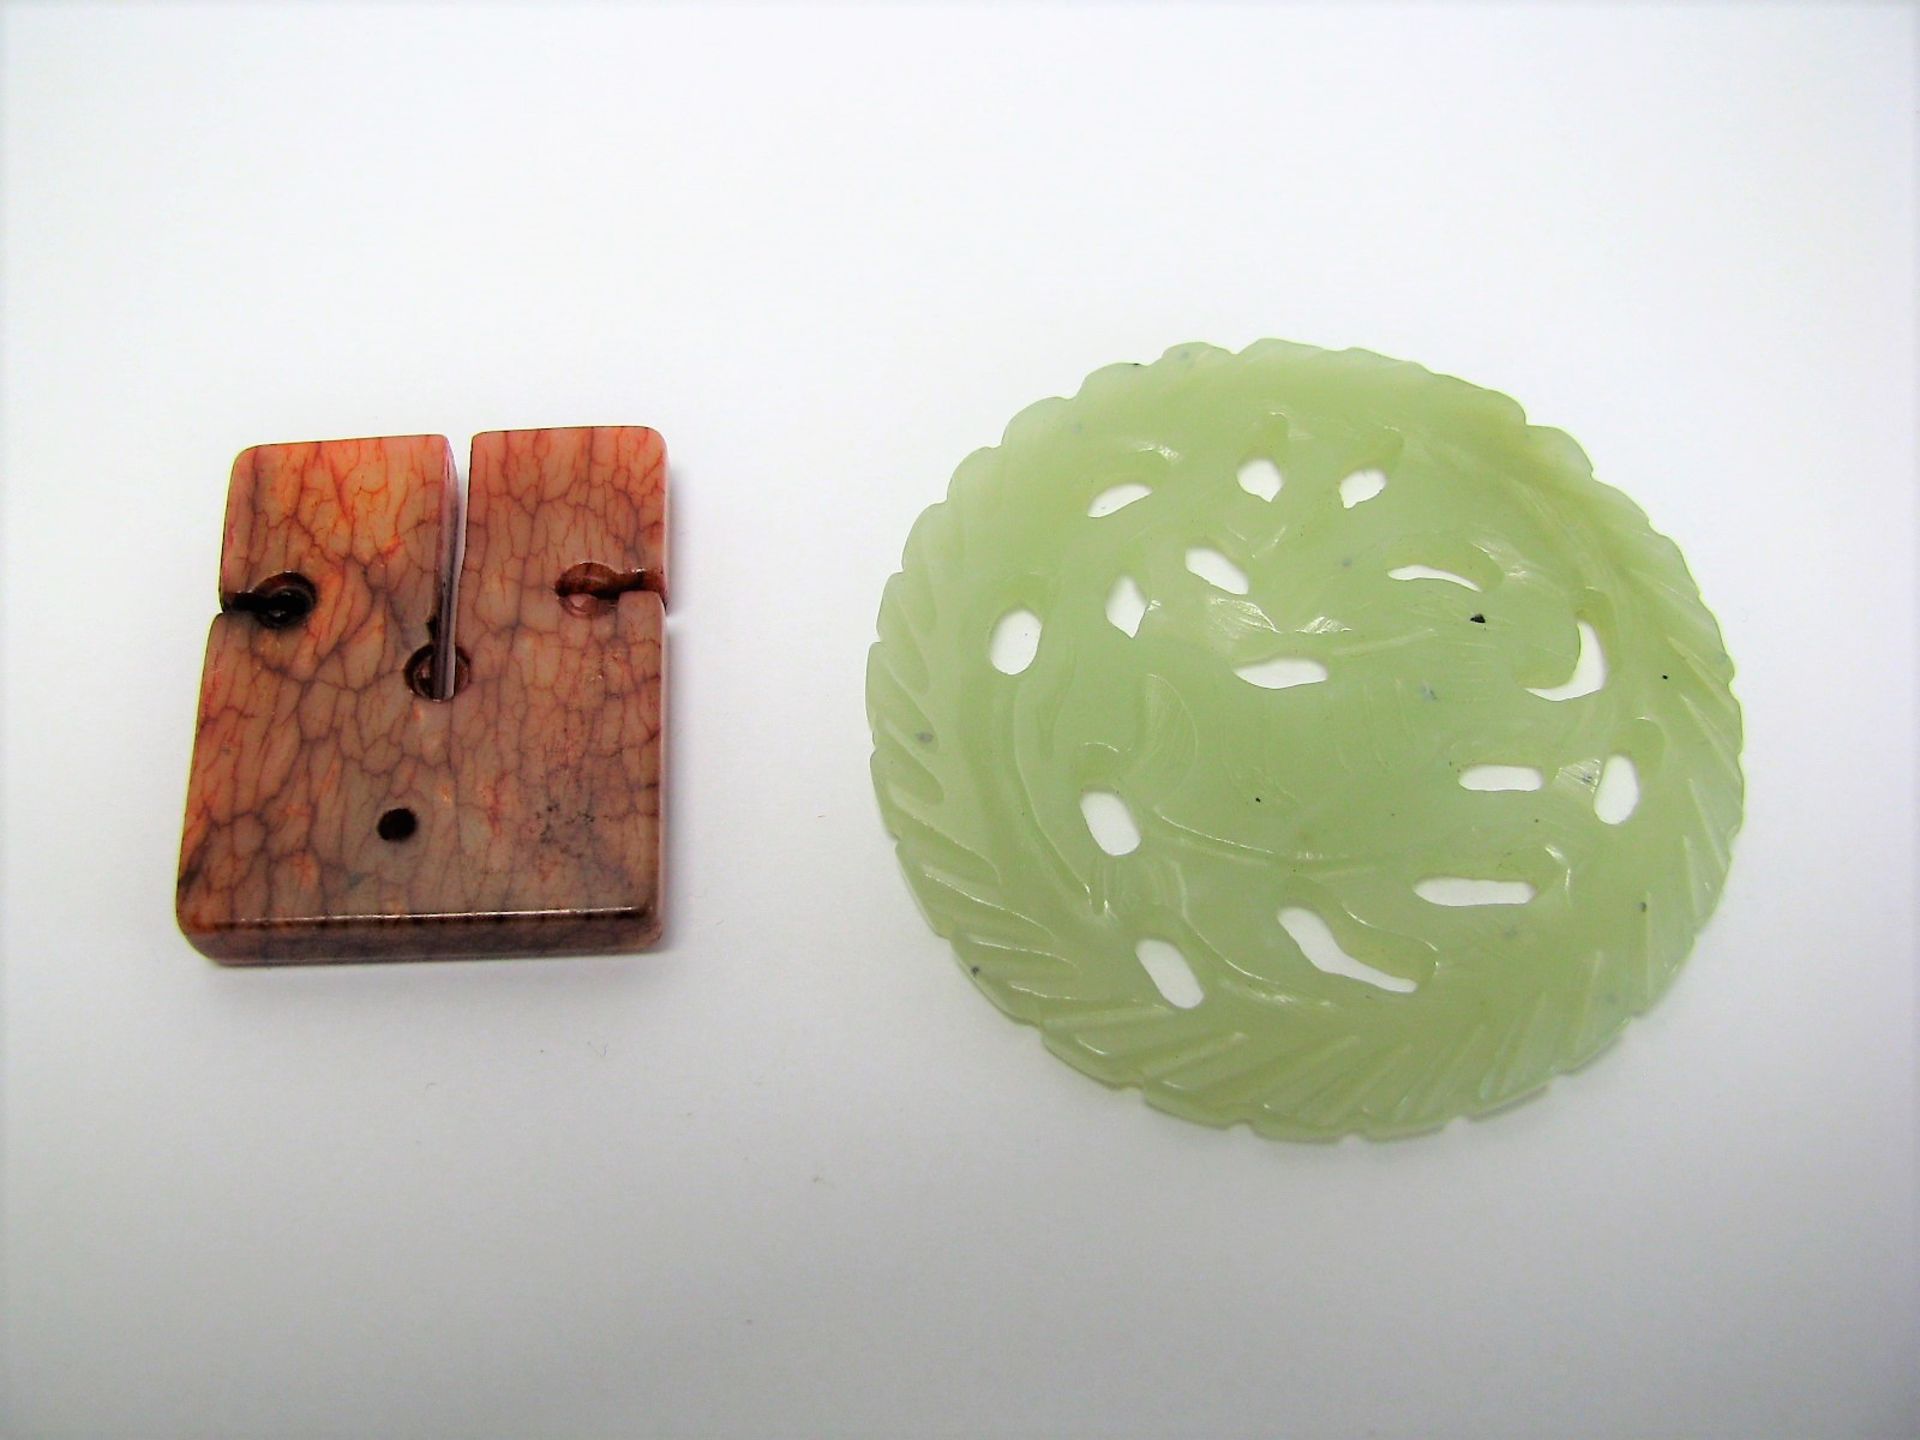 2 Jadestücke, China, grünliche und rötliche Jade, 1 x d 5,5 cm, 3,5 x 3 cm.